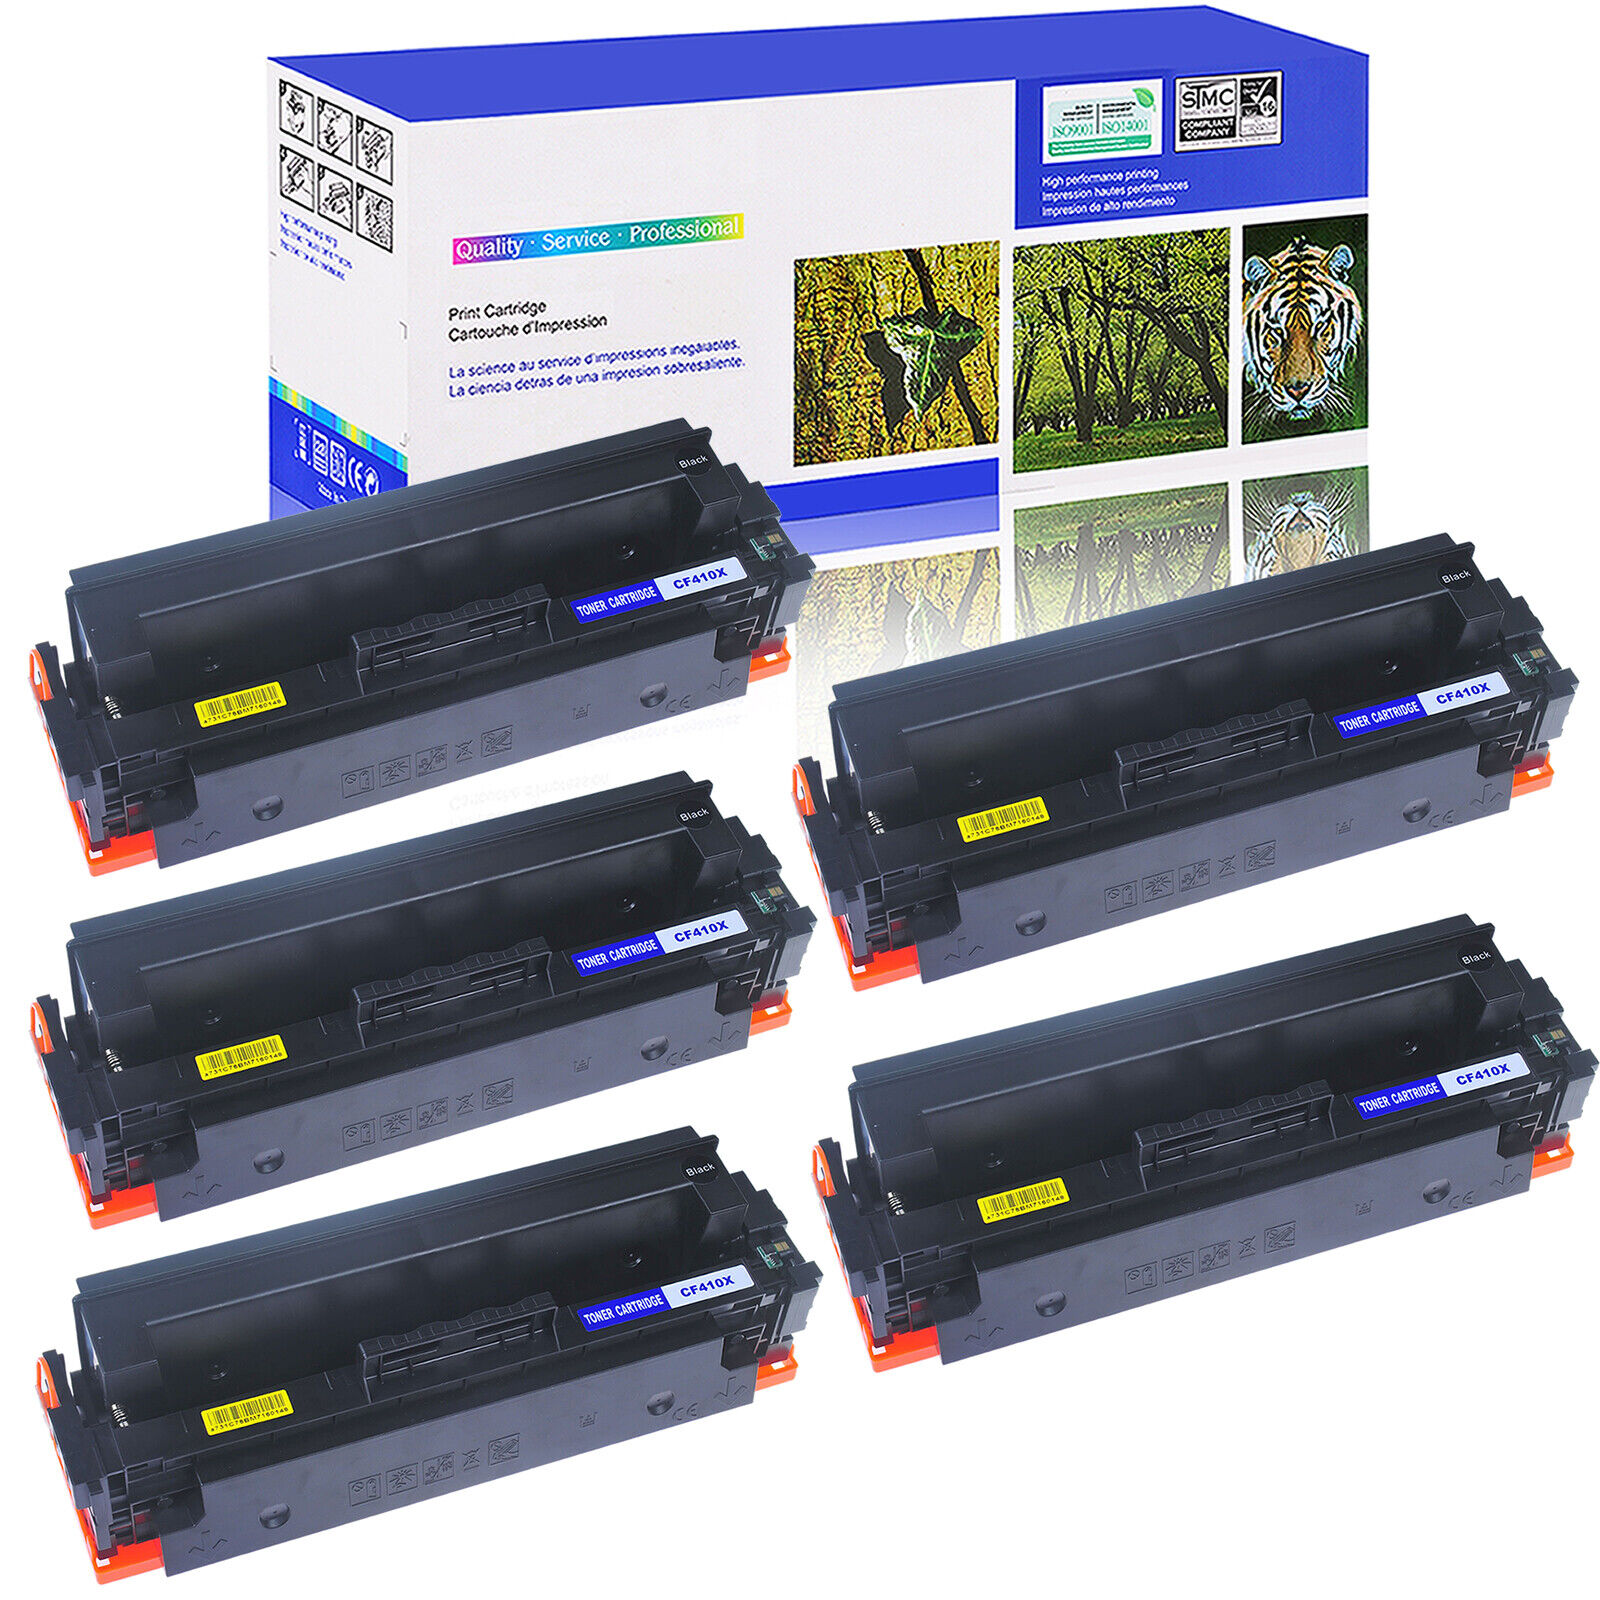 5PK CF410X Black Toner Cartridge for HP LaserJet Pro MFP M377 M477 M452 Printer